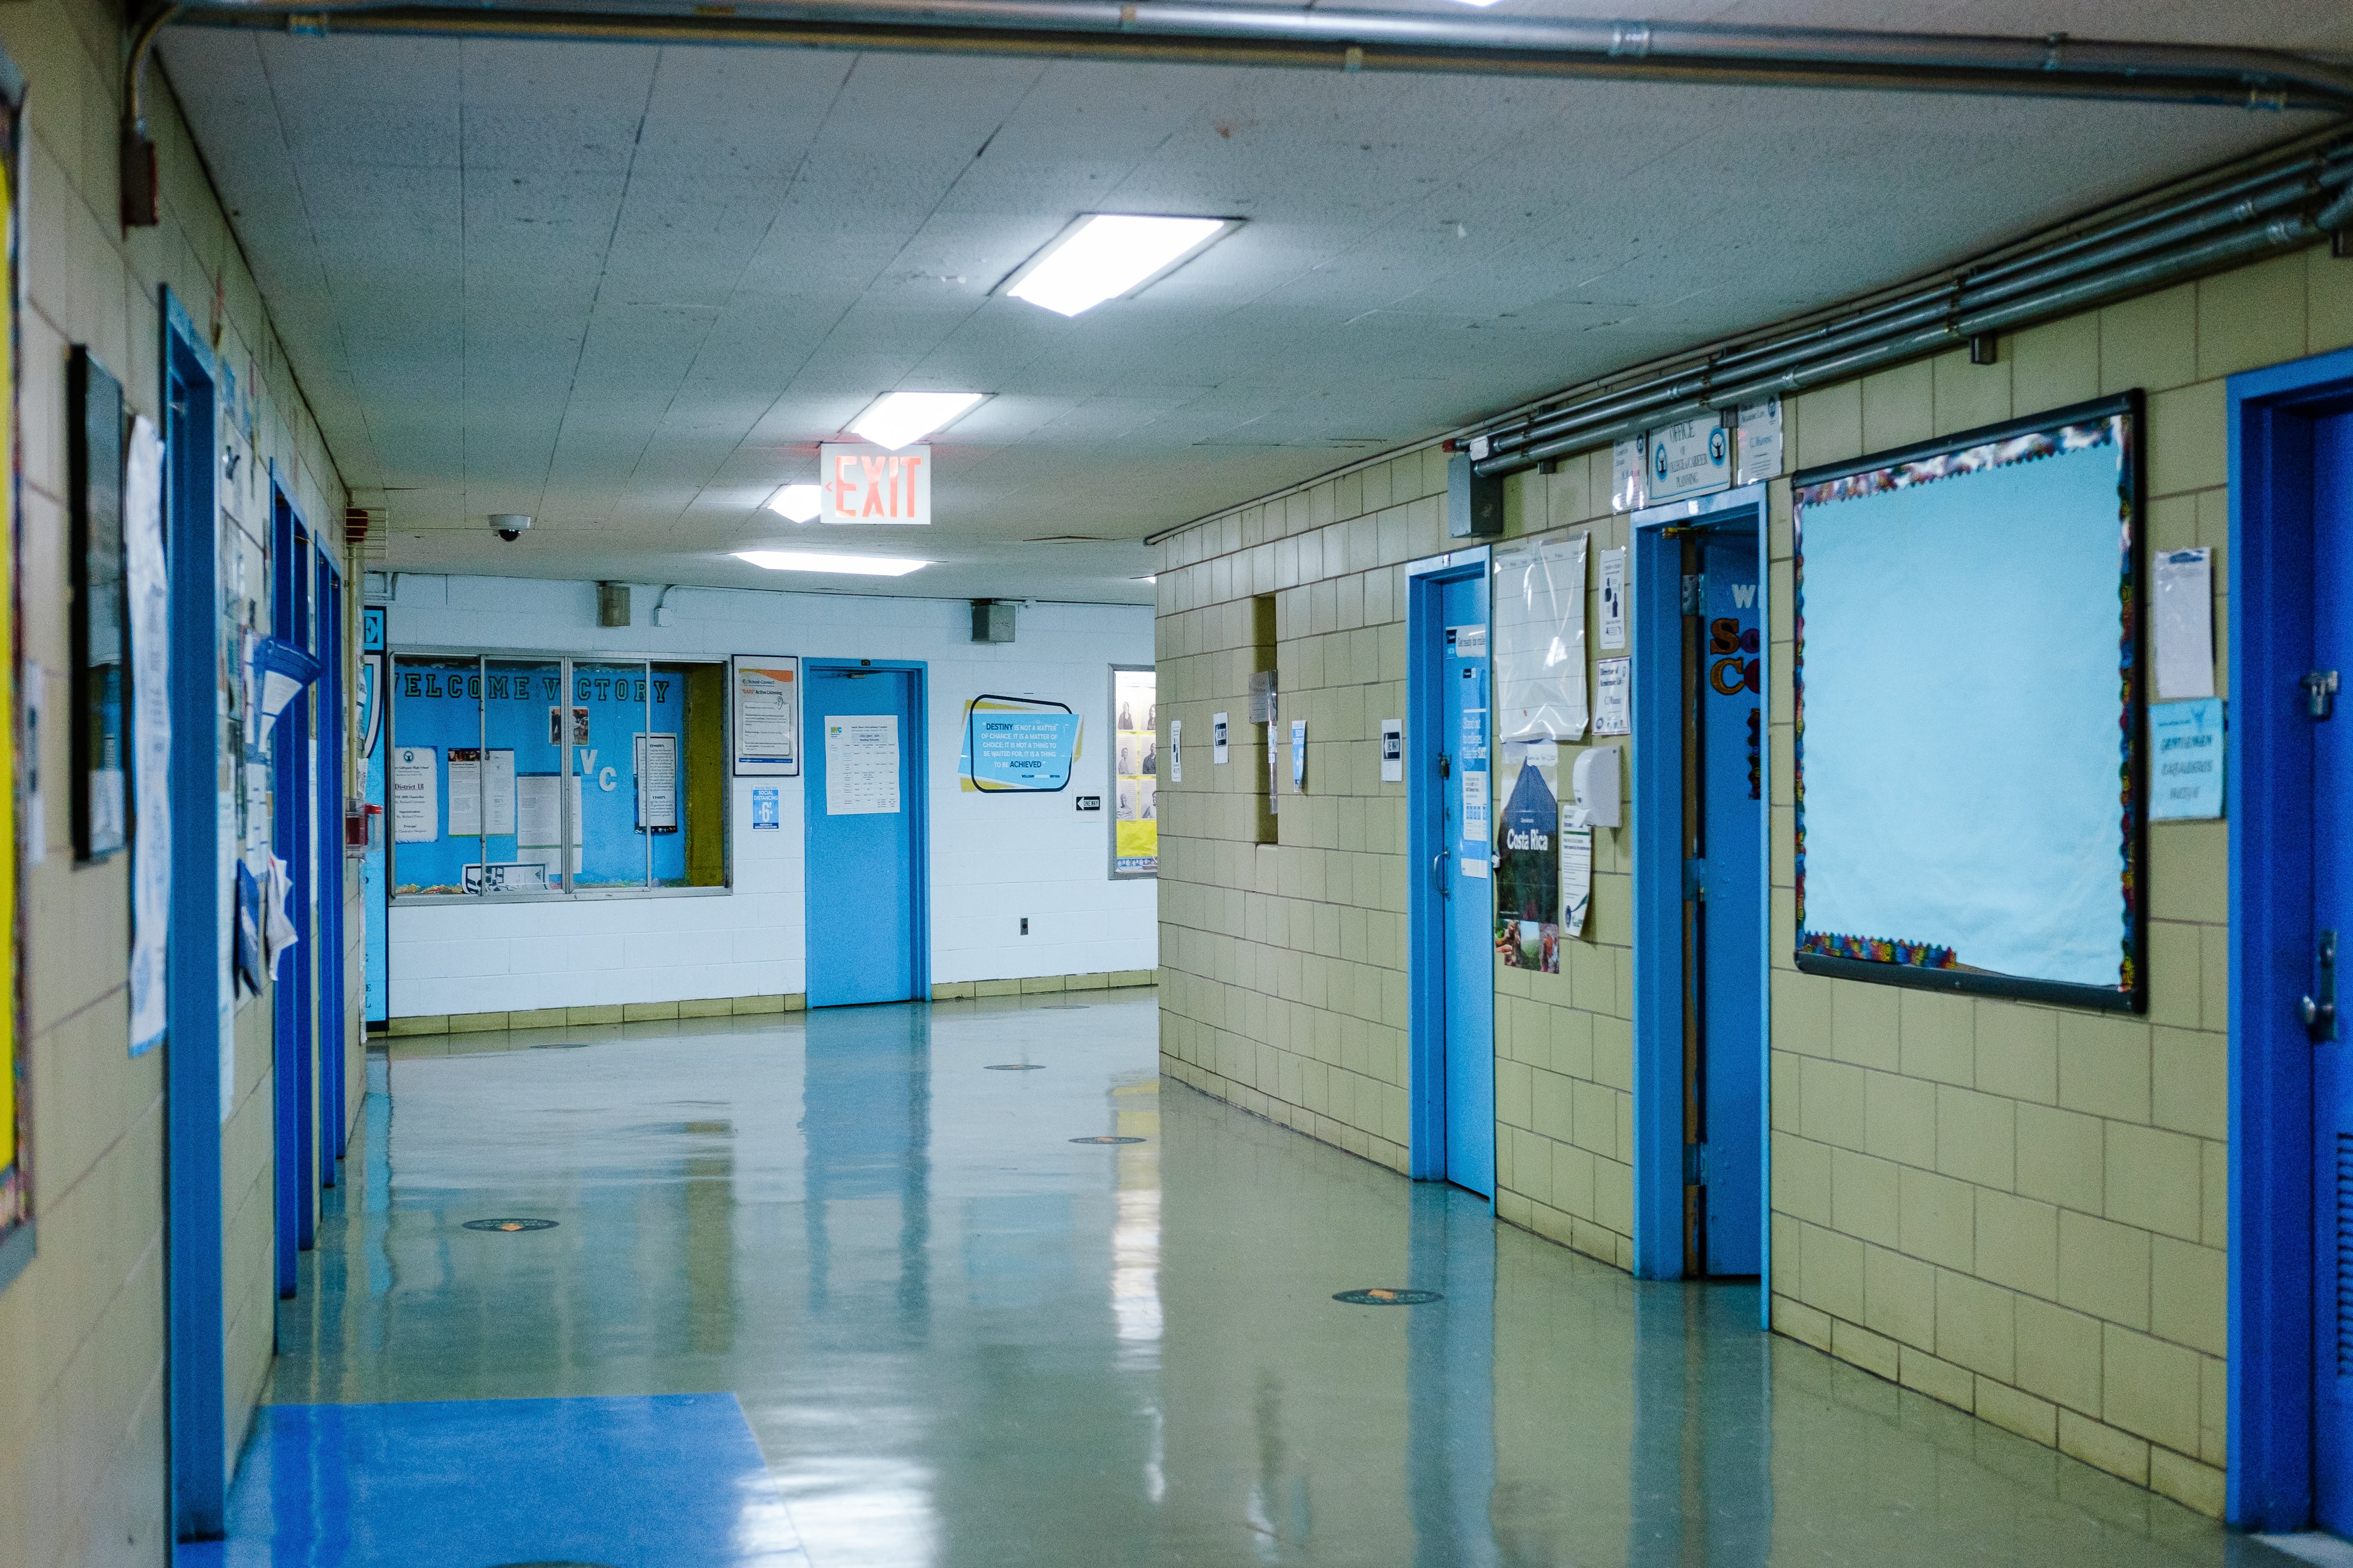 An empty school hallway with beige walls and blue doors